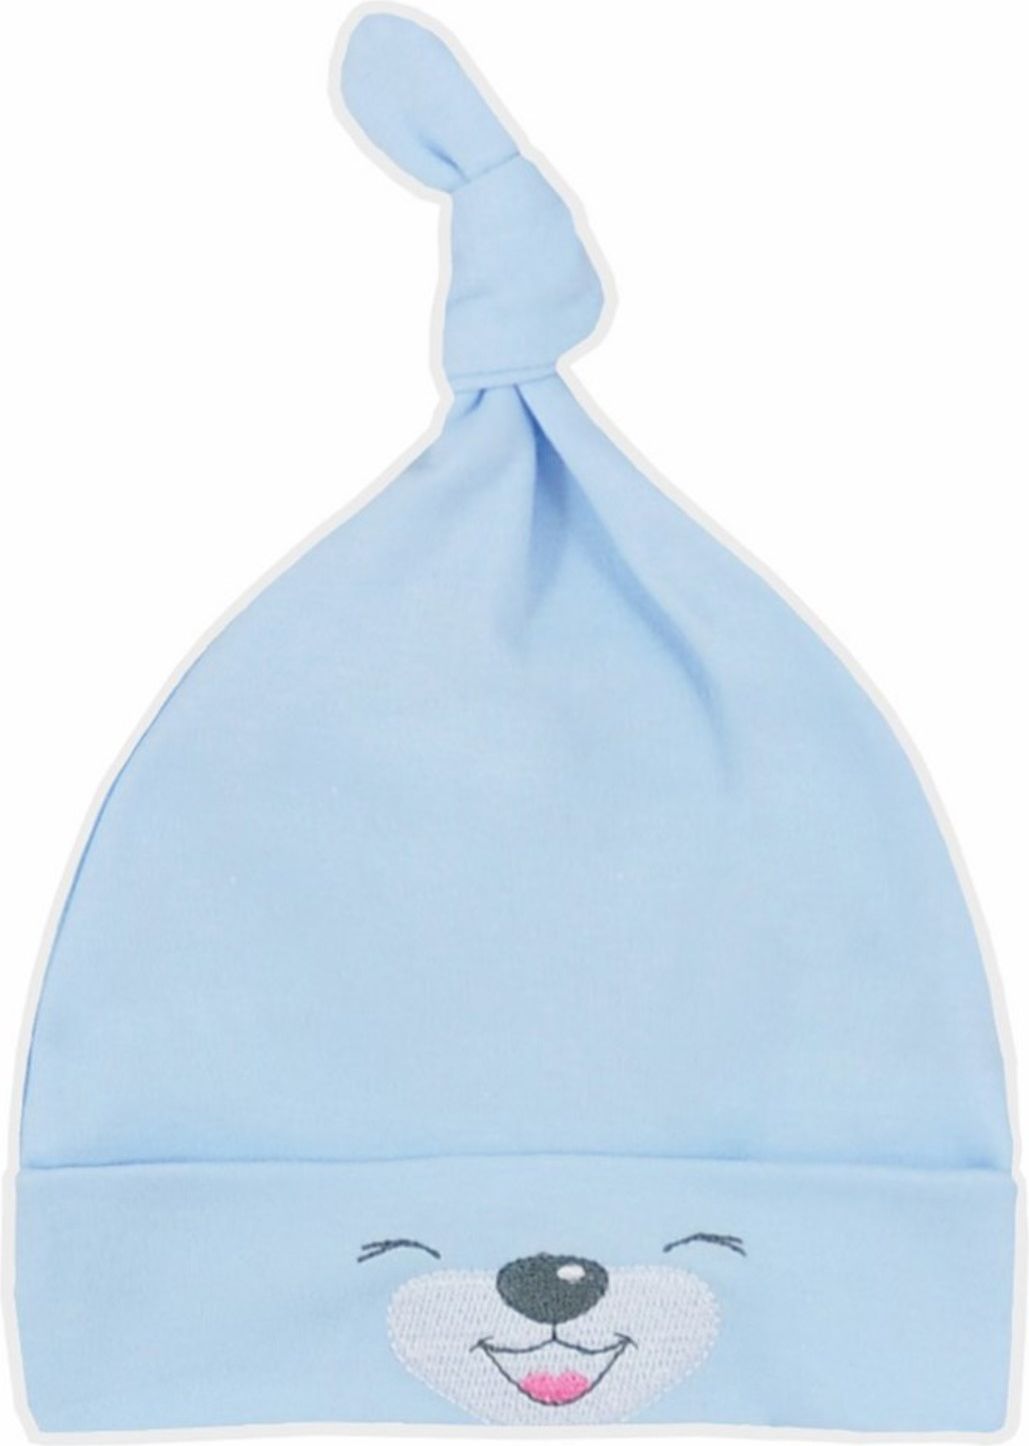 Bavlněná kojenecká čepička Bobas Fashion Lucky modrá - Bavlněná kojenecká čepička Bobas Fashion Lucky modrá - obrázek 1